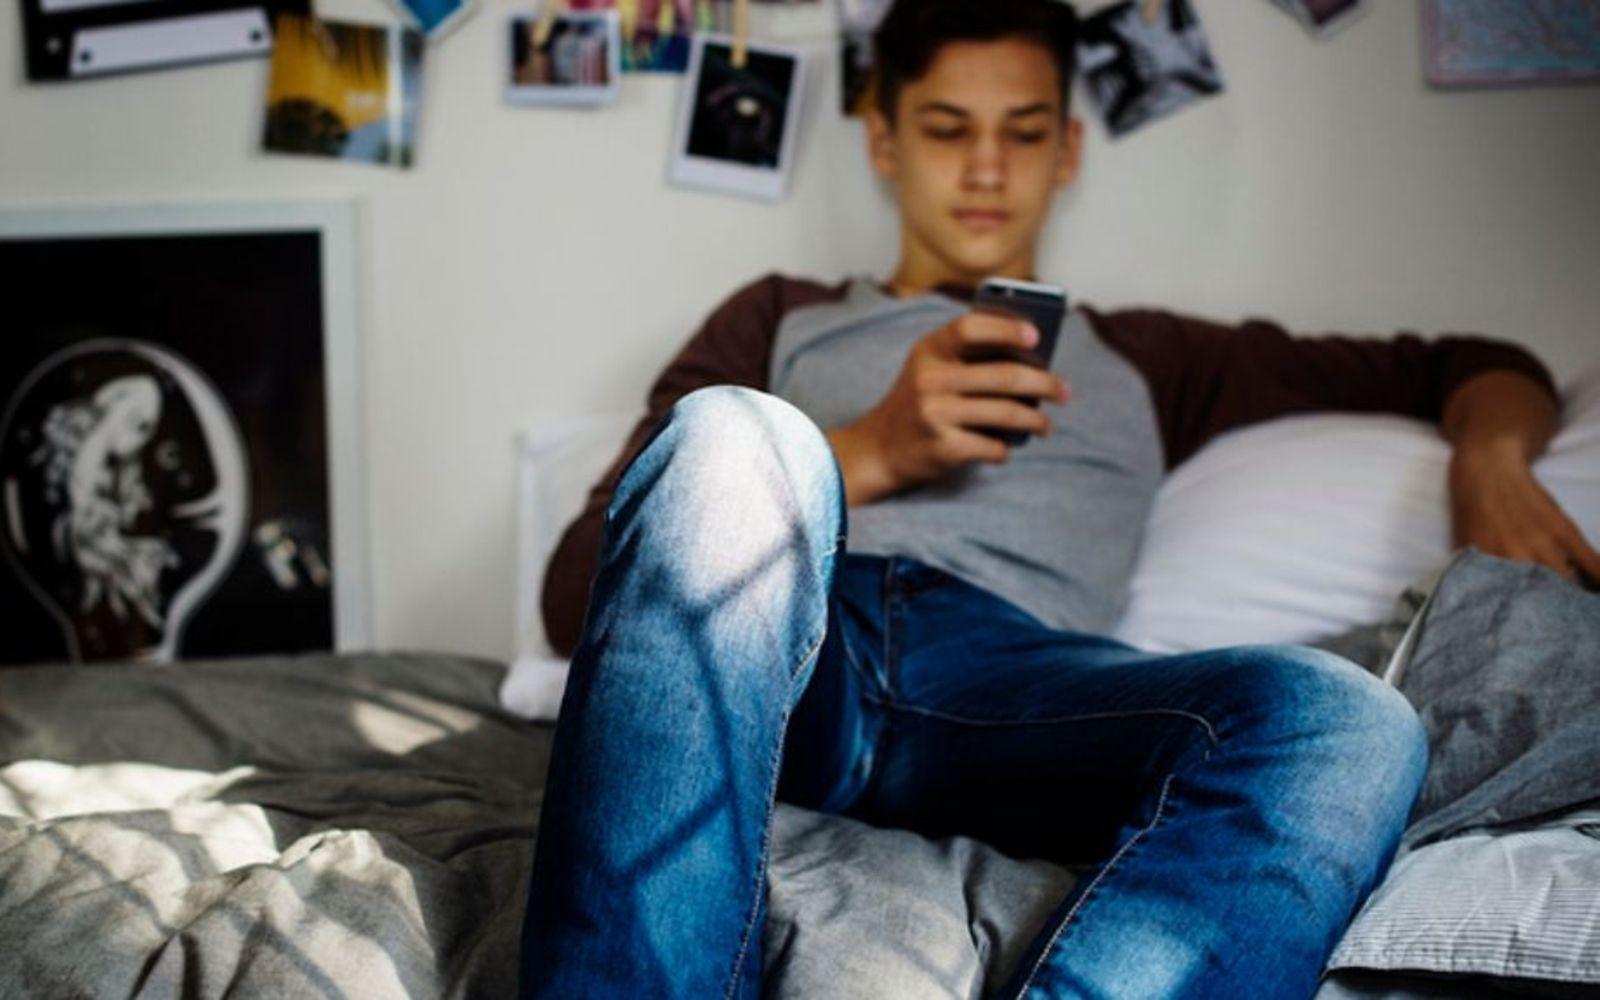 Symbolbild Pubertät bei Jungen: Ein Teenager sitzt auf einem Sofa und guckt auf ein Smartphone